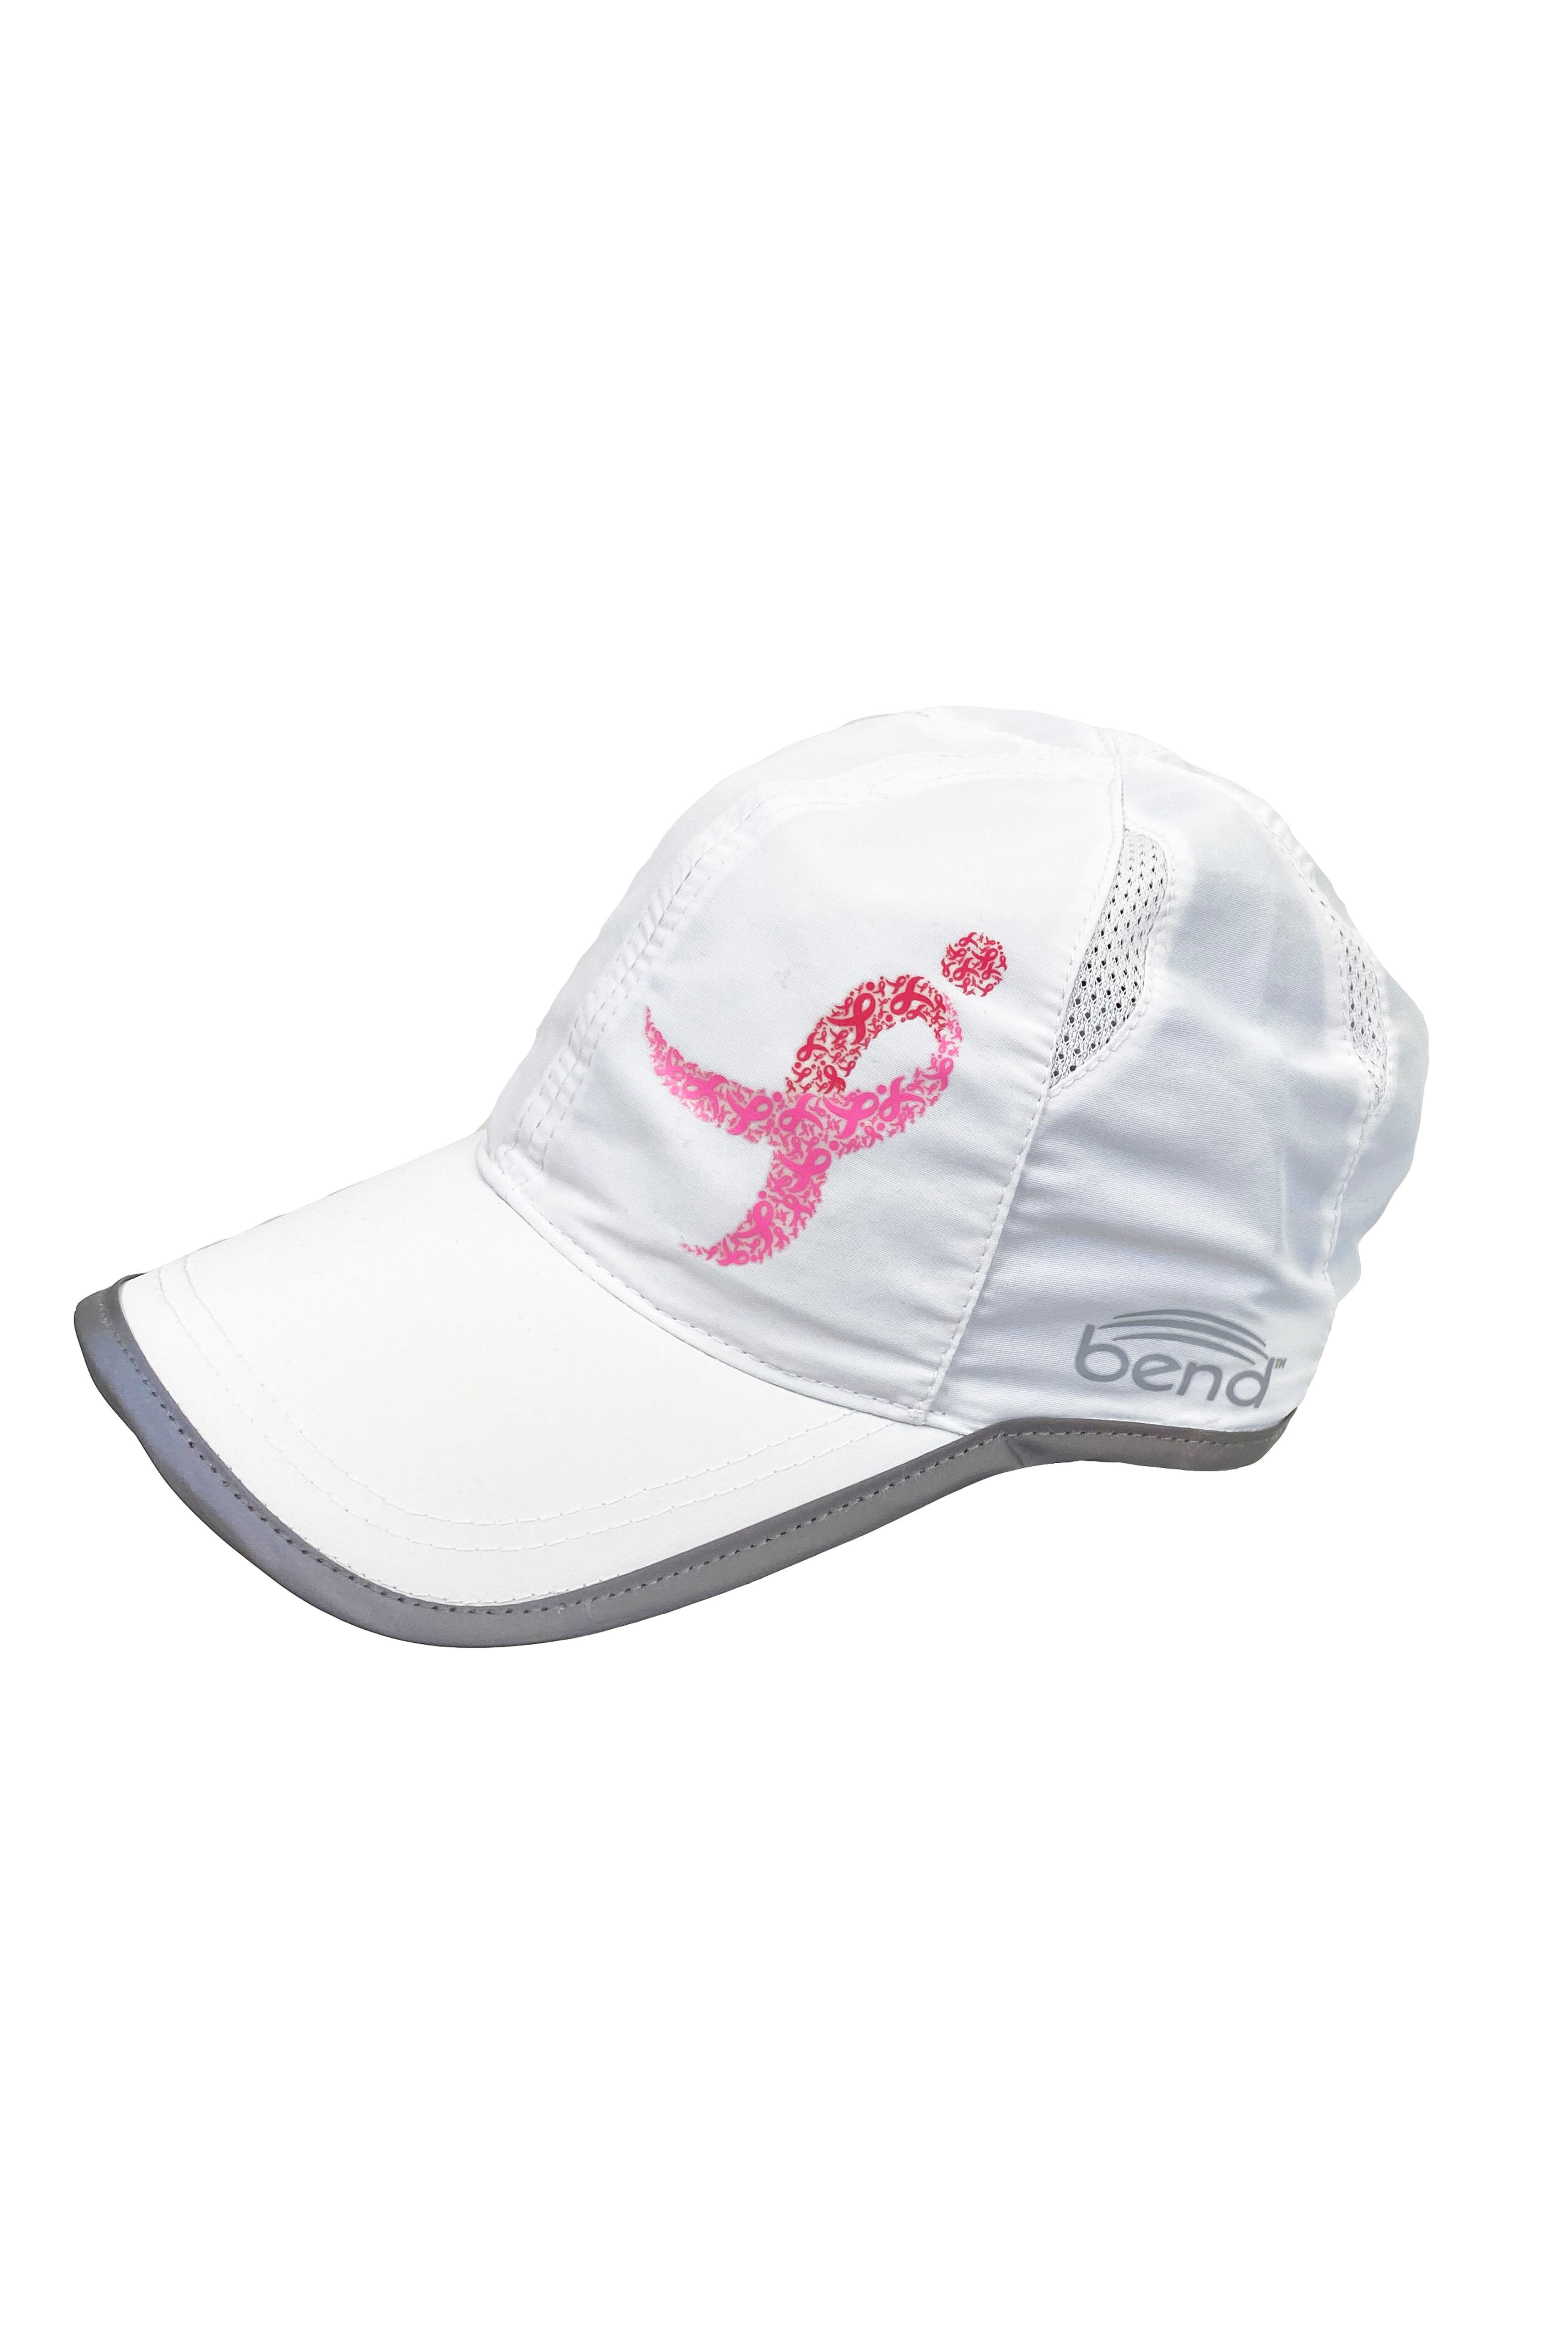 Komen Columbus Pink Ribbon Running Hat/White